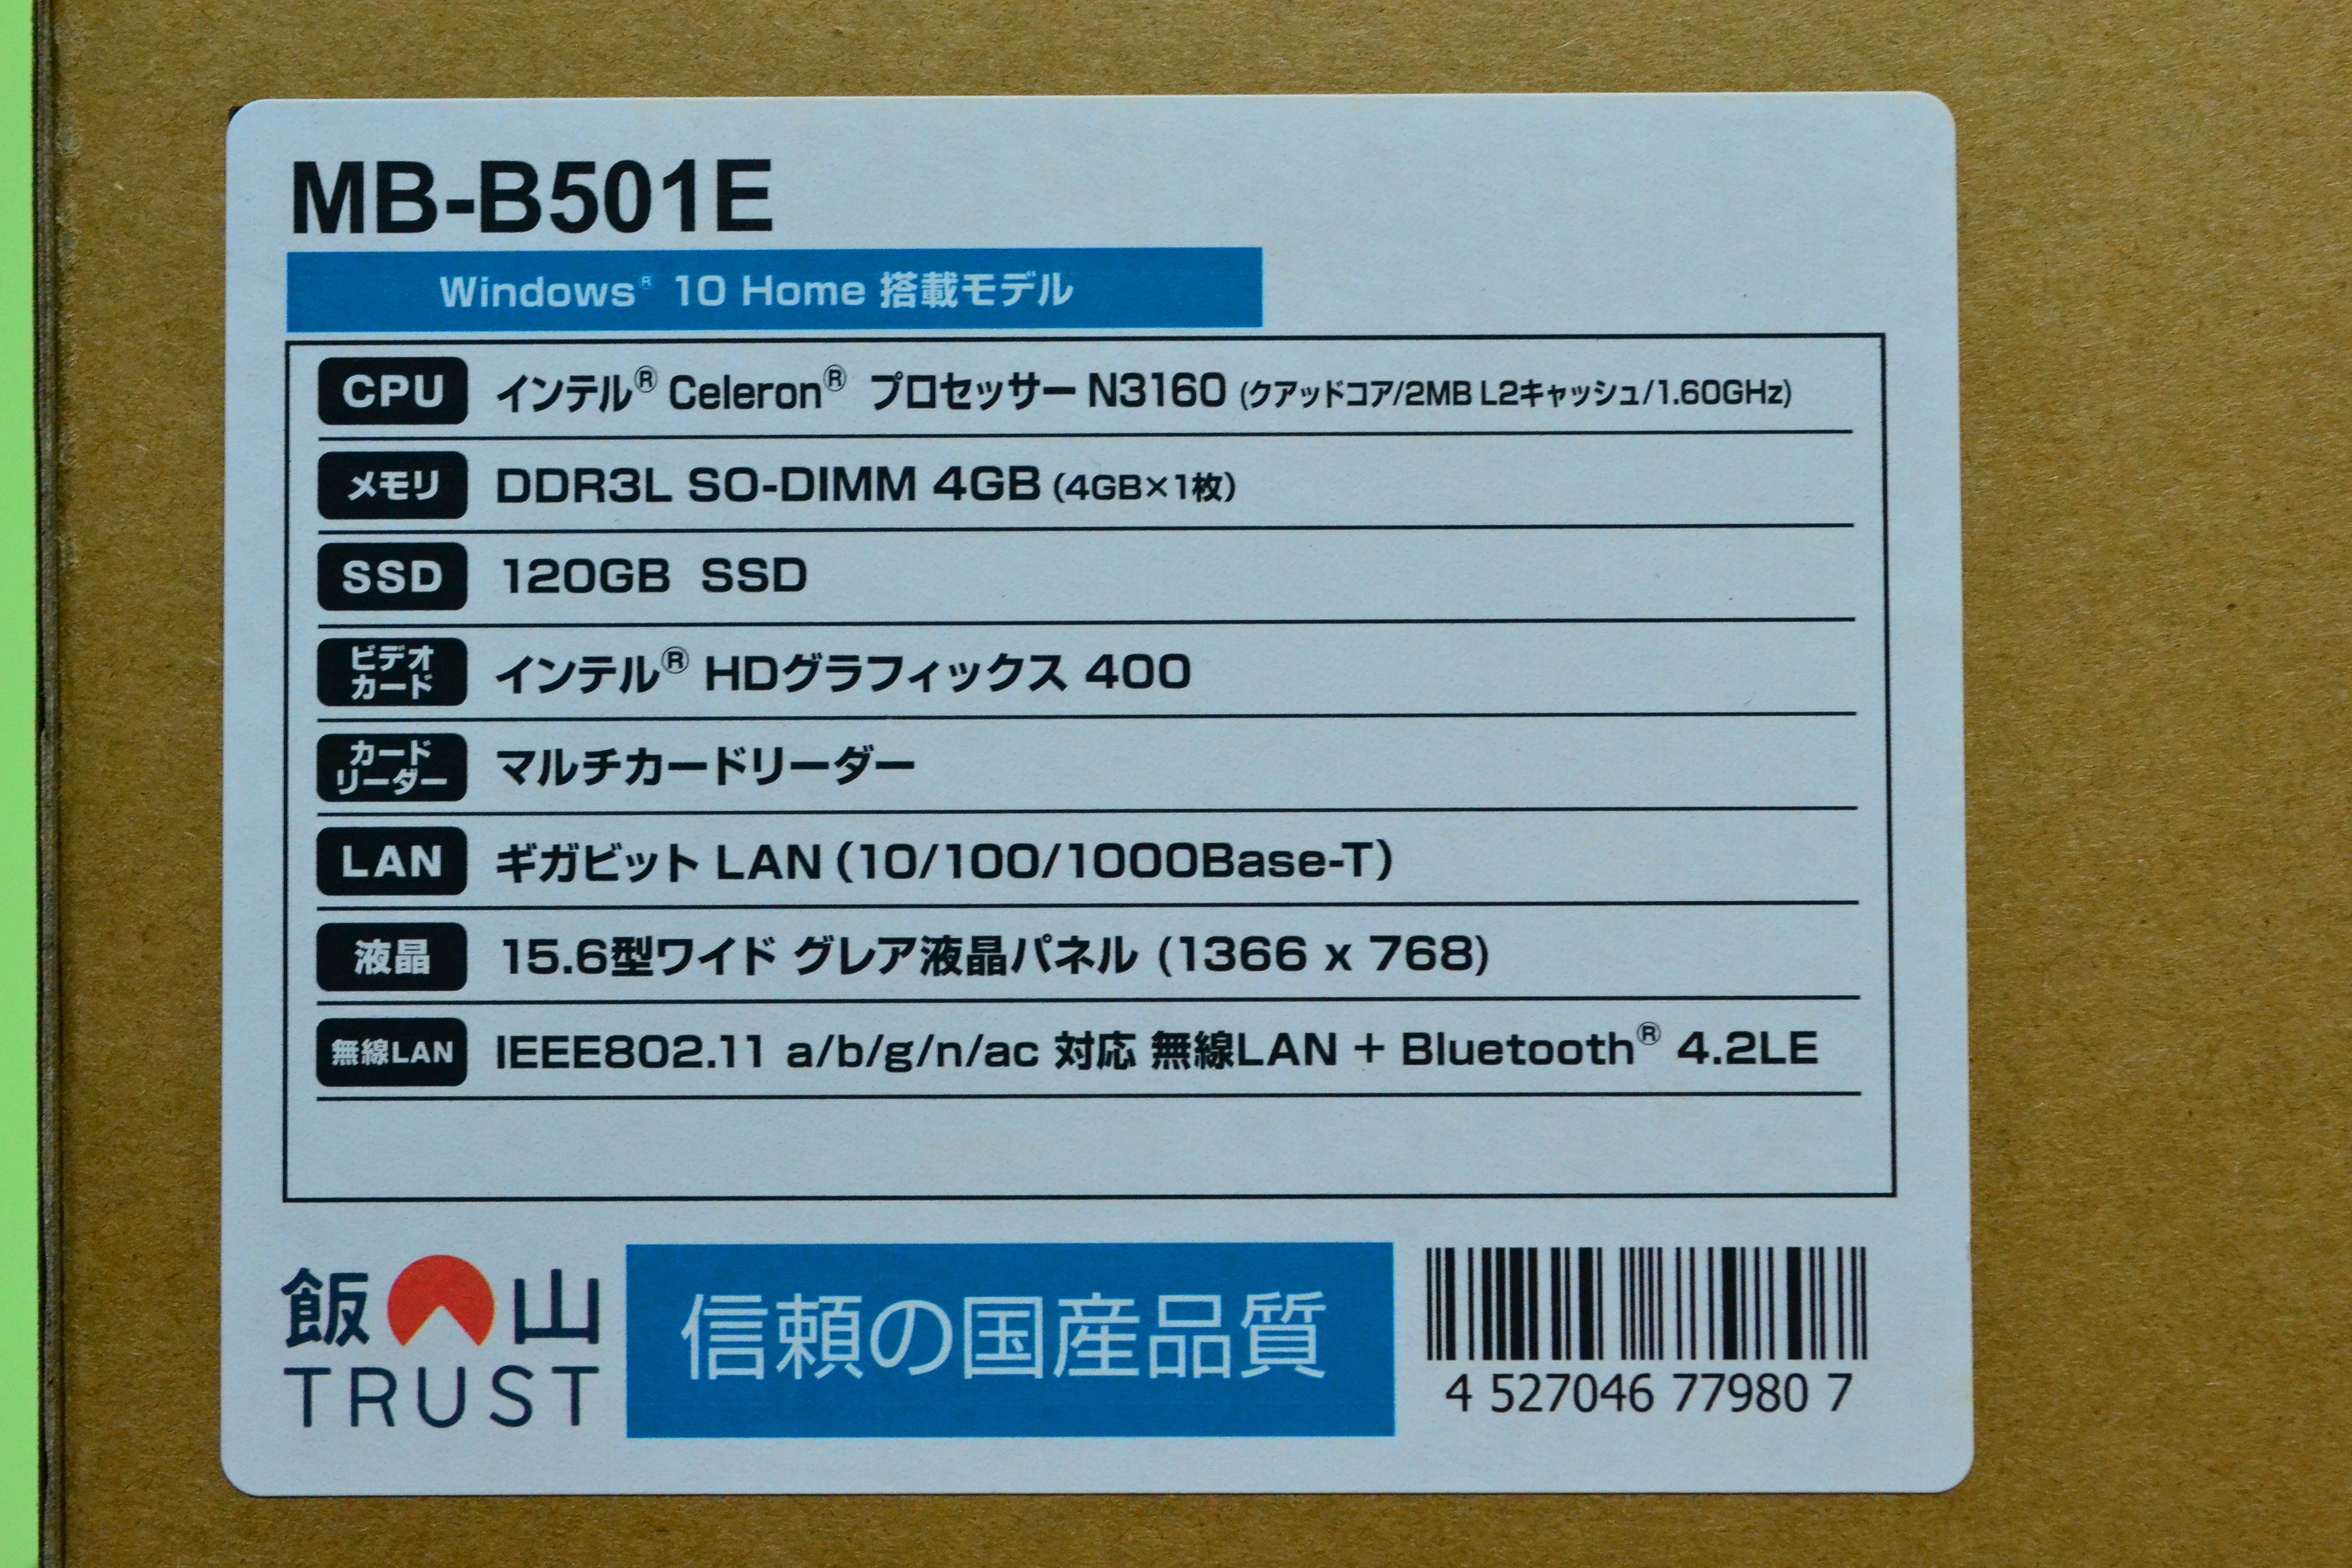 激安ノートパソコンm-Book MB-B501E を買ってみた - まず分解。